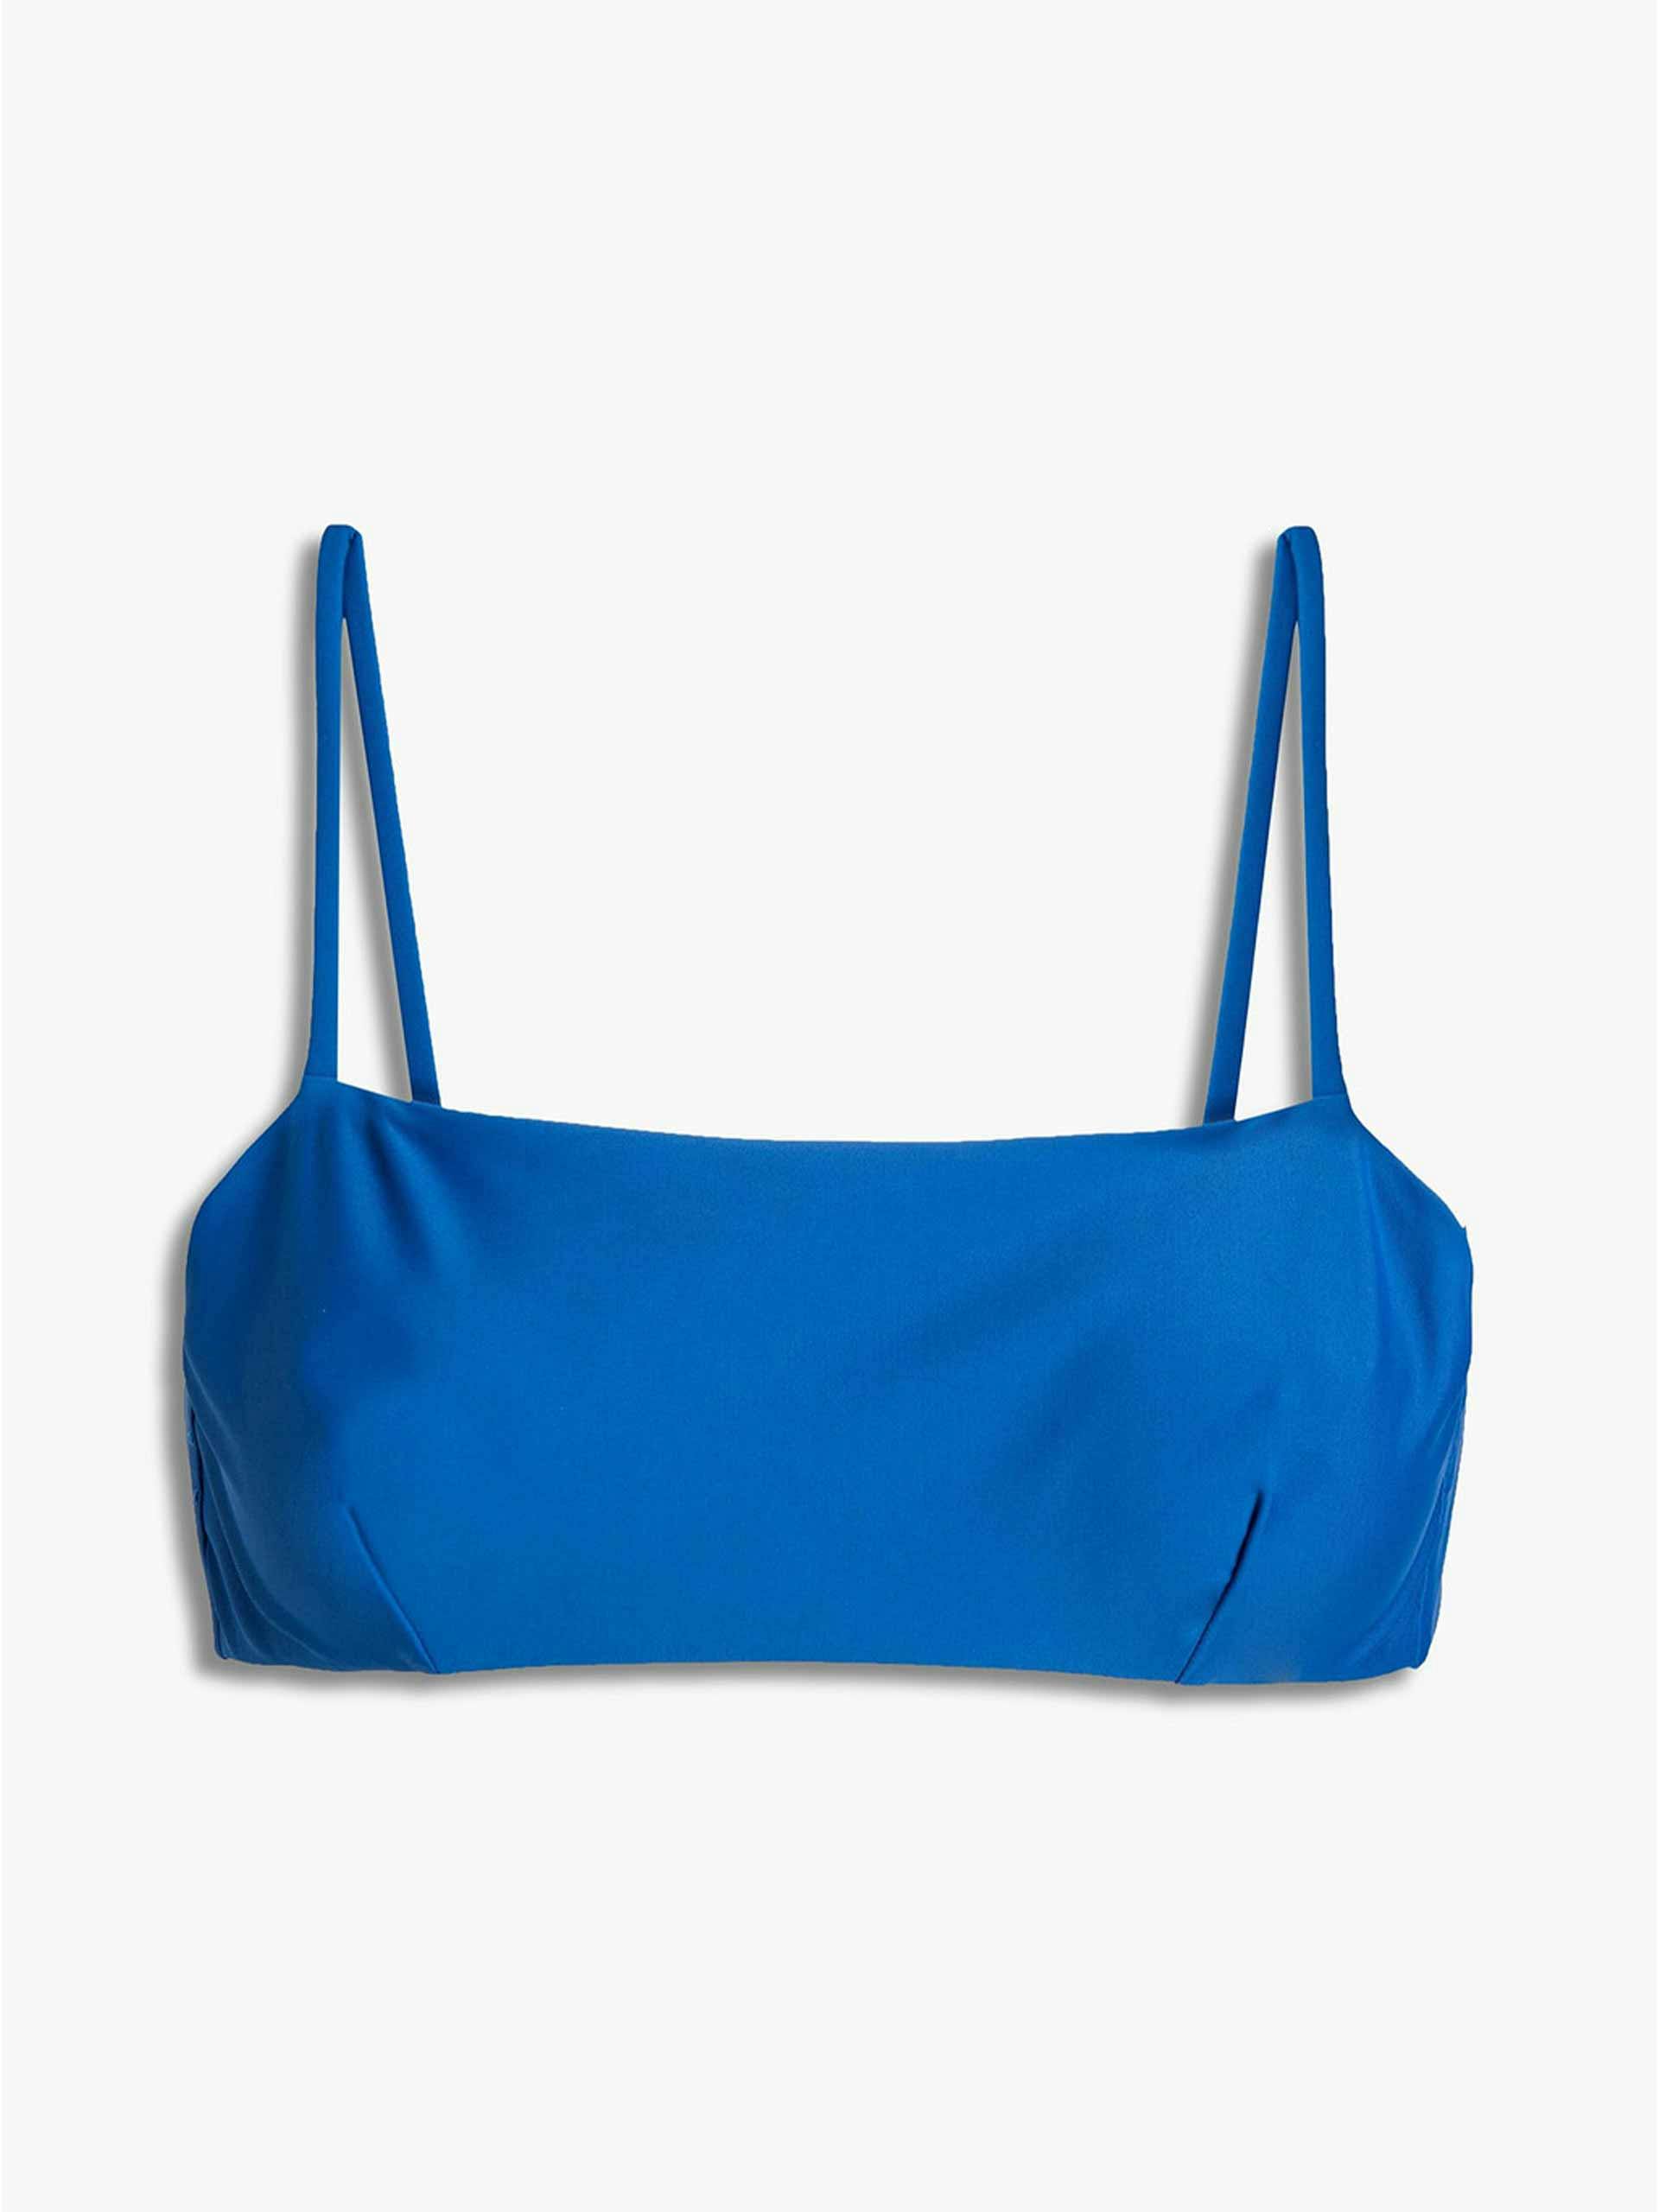 Blue bikini top